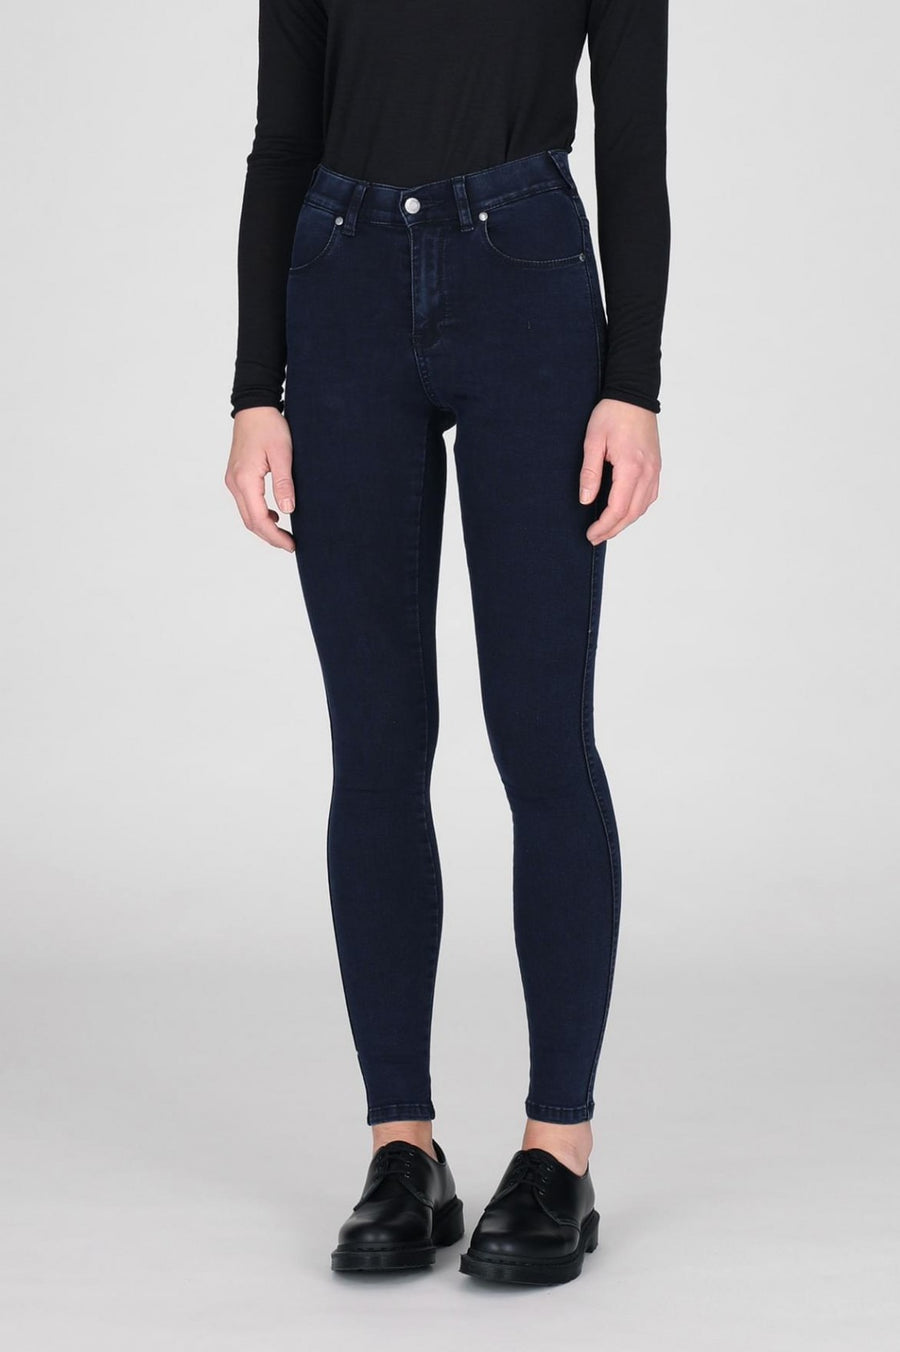 Lexy Jeans Blue Lush - Dr Denim Jeans - Australia & NZ